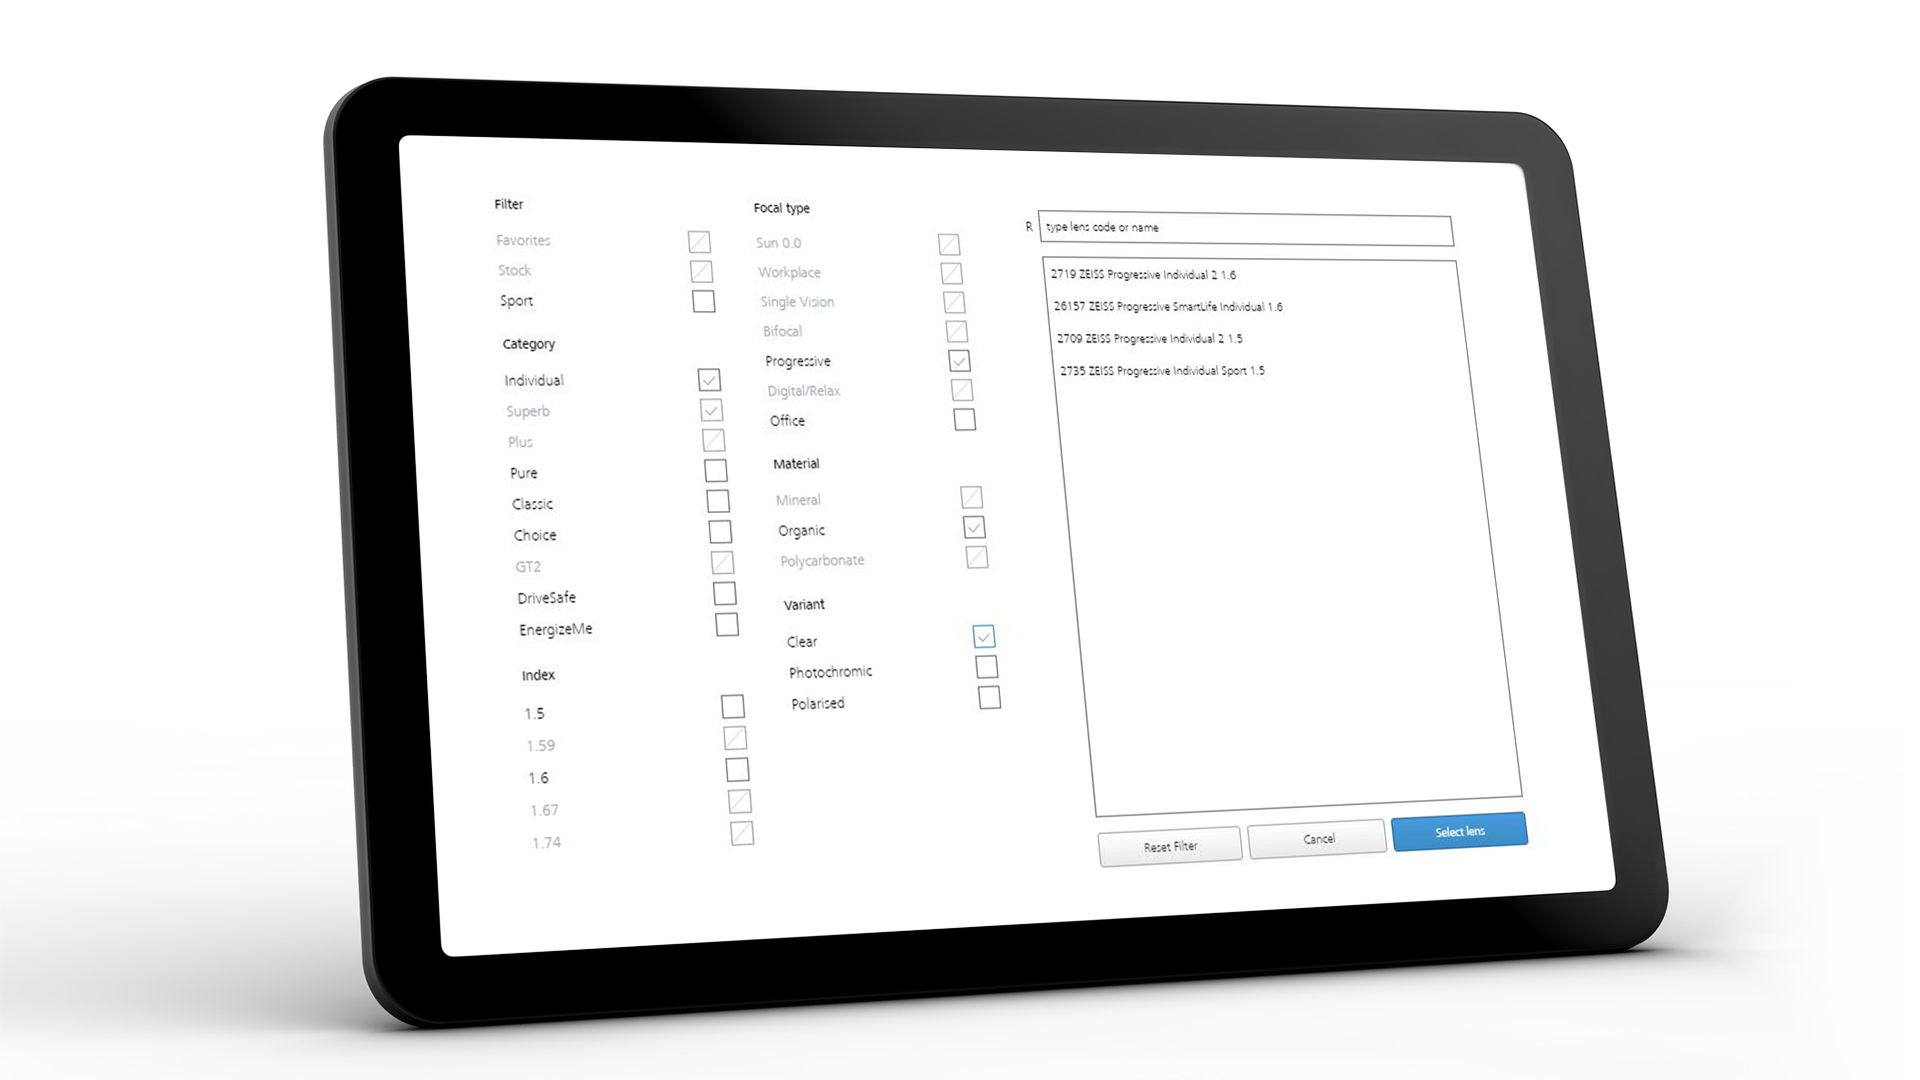 Ecranul tabletei care prezintă interfața ZEISS VISUSTORE pentru ajutoare de introducere a informațiilor 